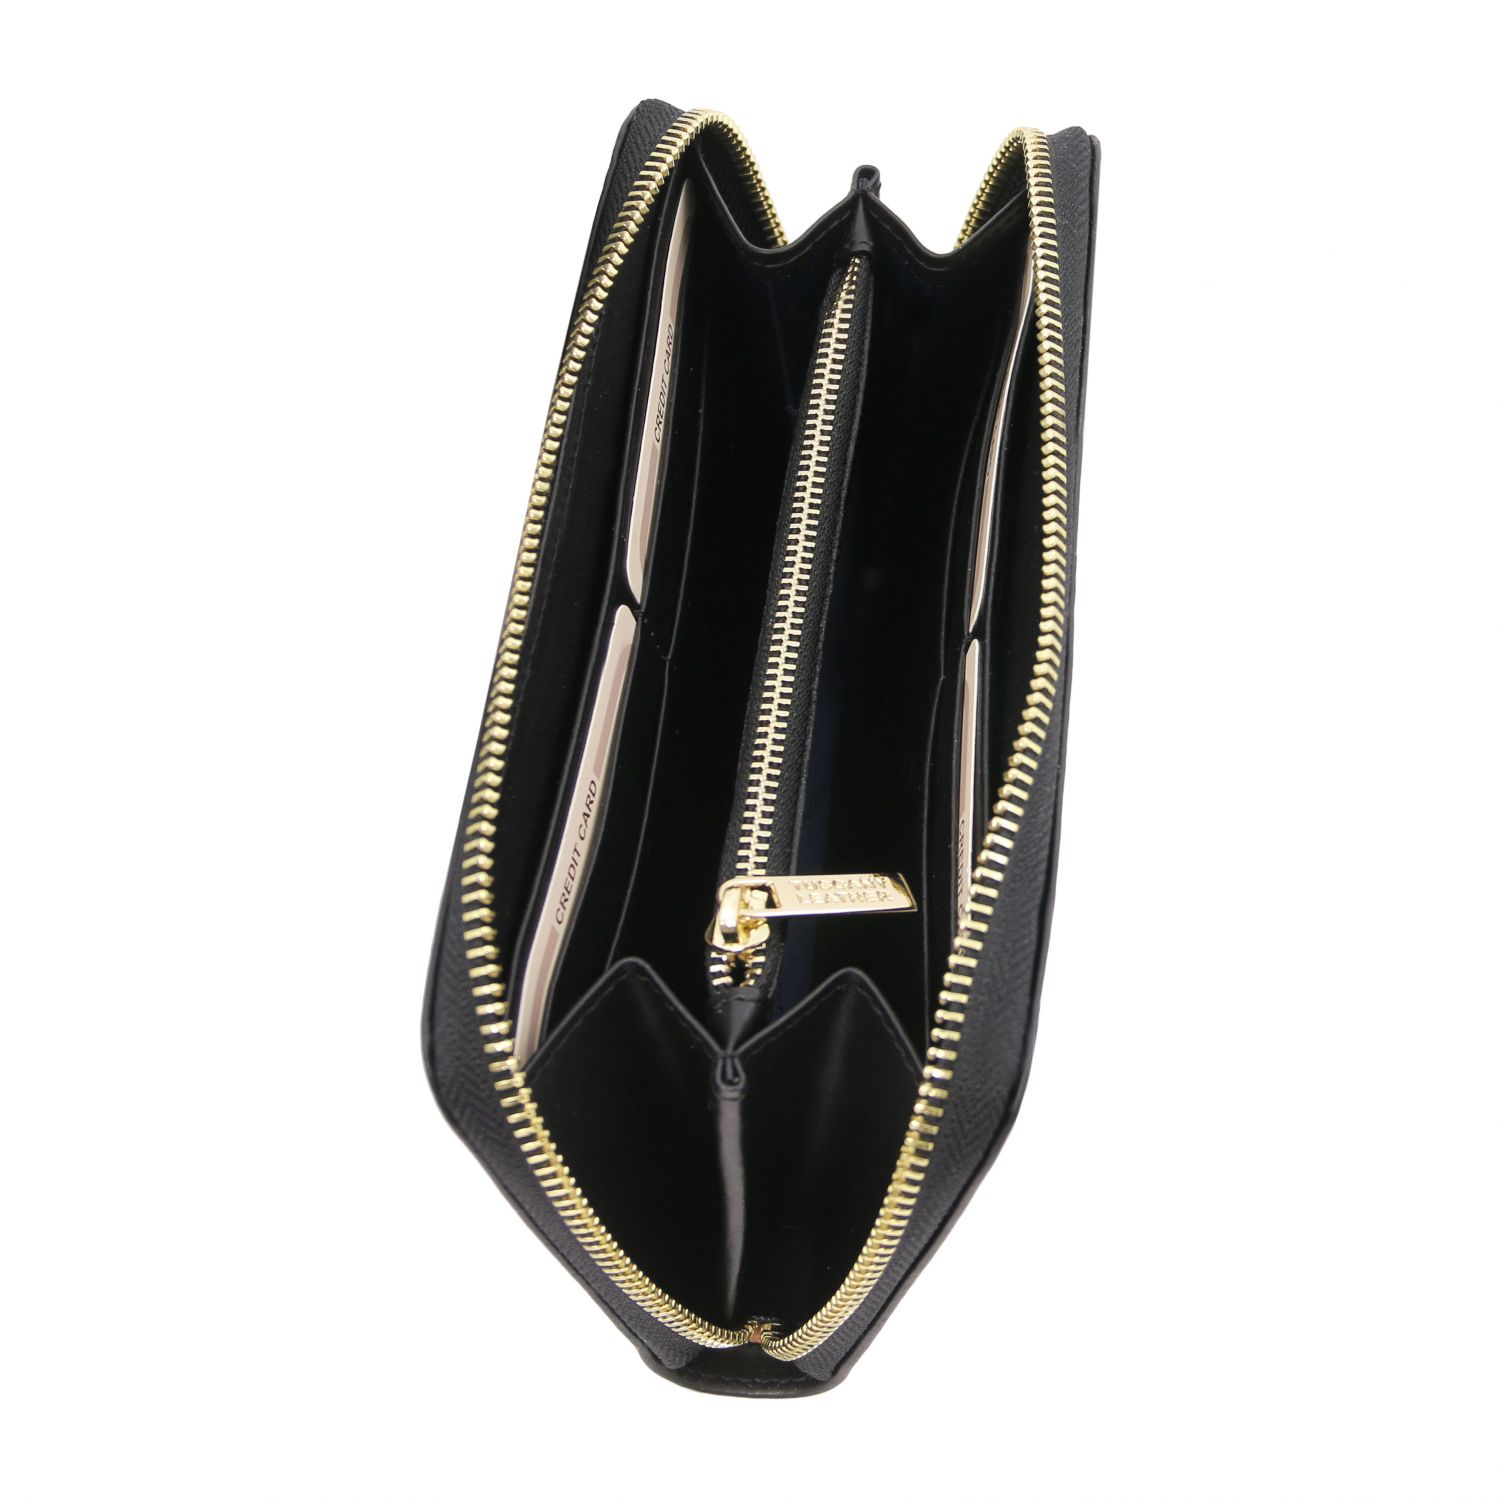 Venere - Elégant portefeuille en cuir avec 3 poches soufflets et fermeture glissière - Noir (TL142085)